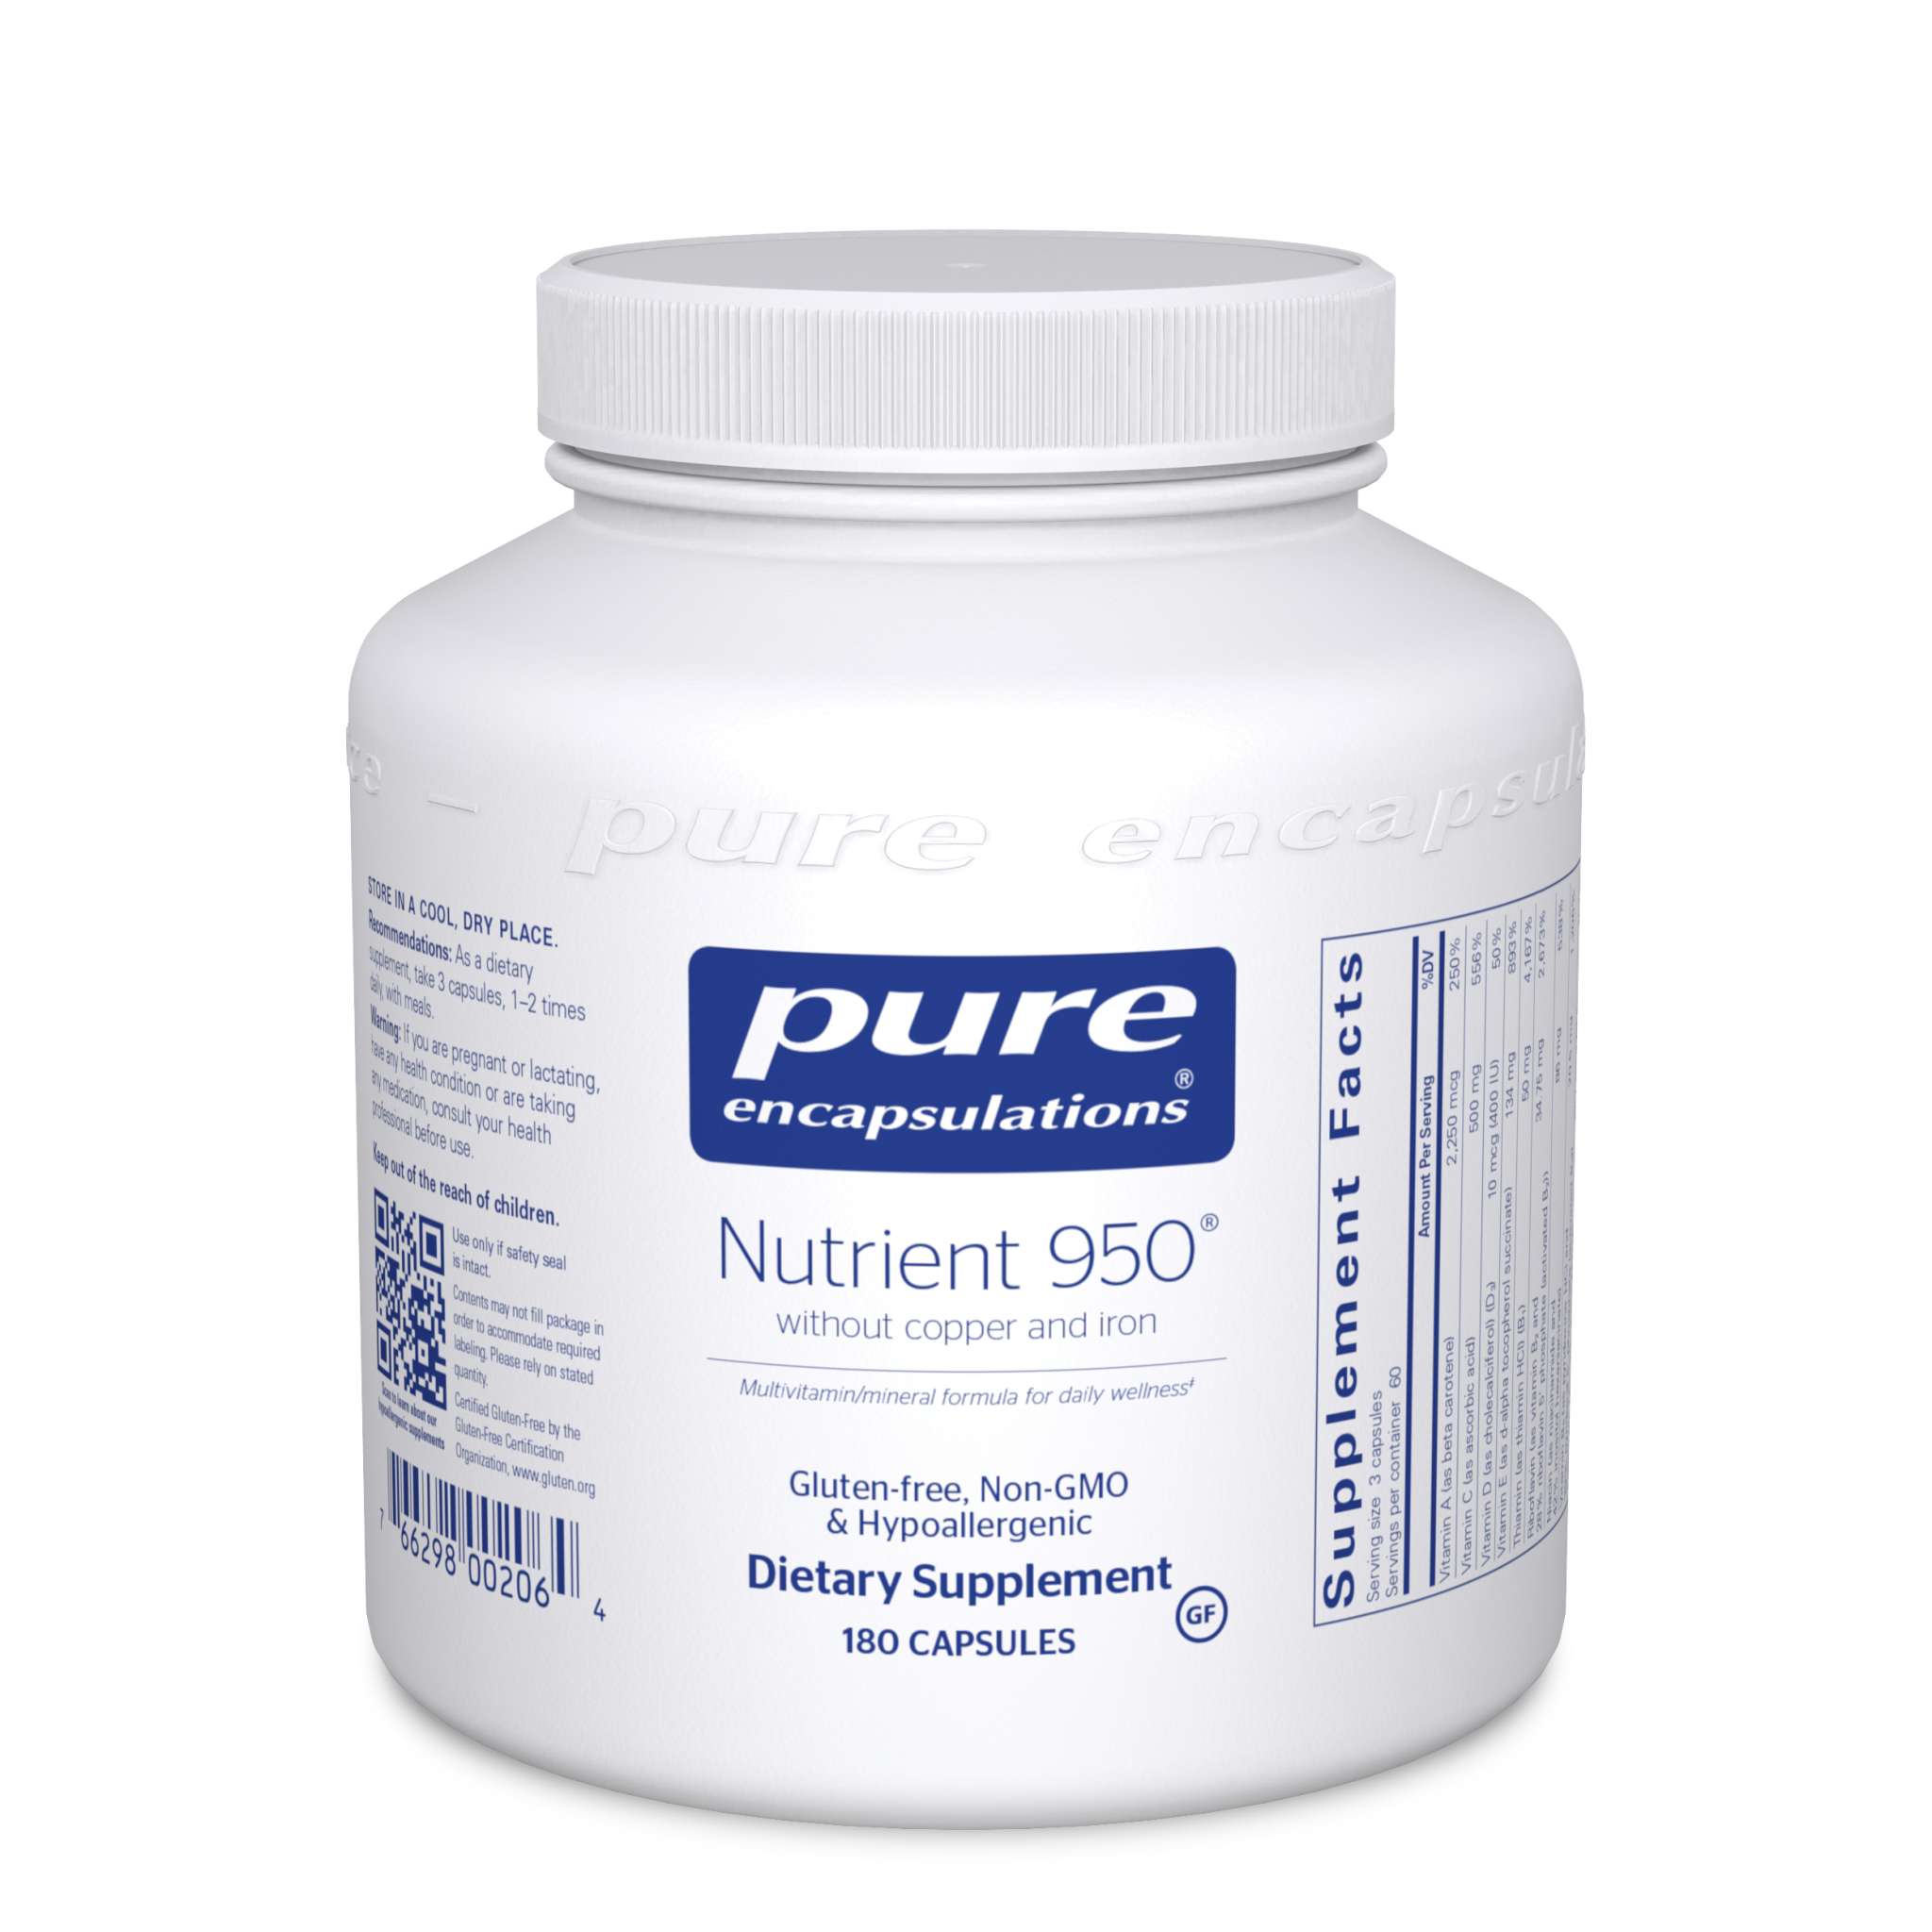 Pure Encapsulations - Nutrient 950 No Cu/Fe